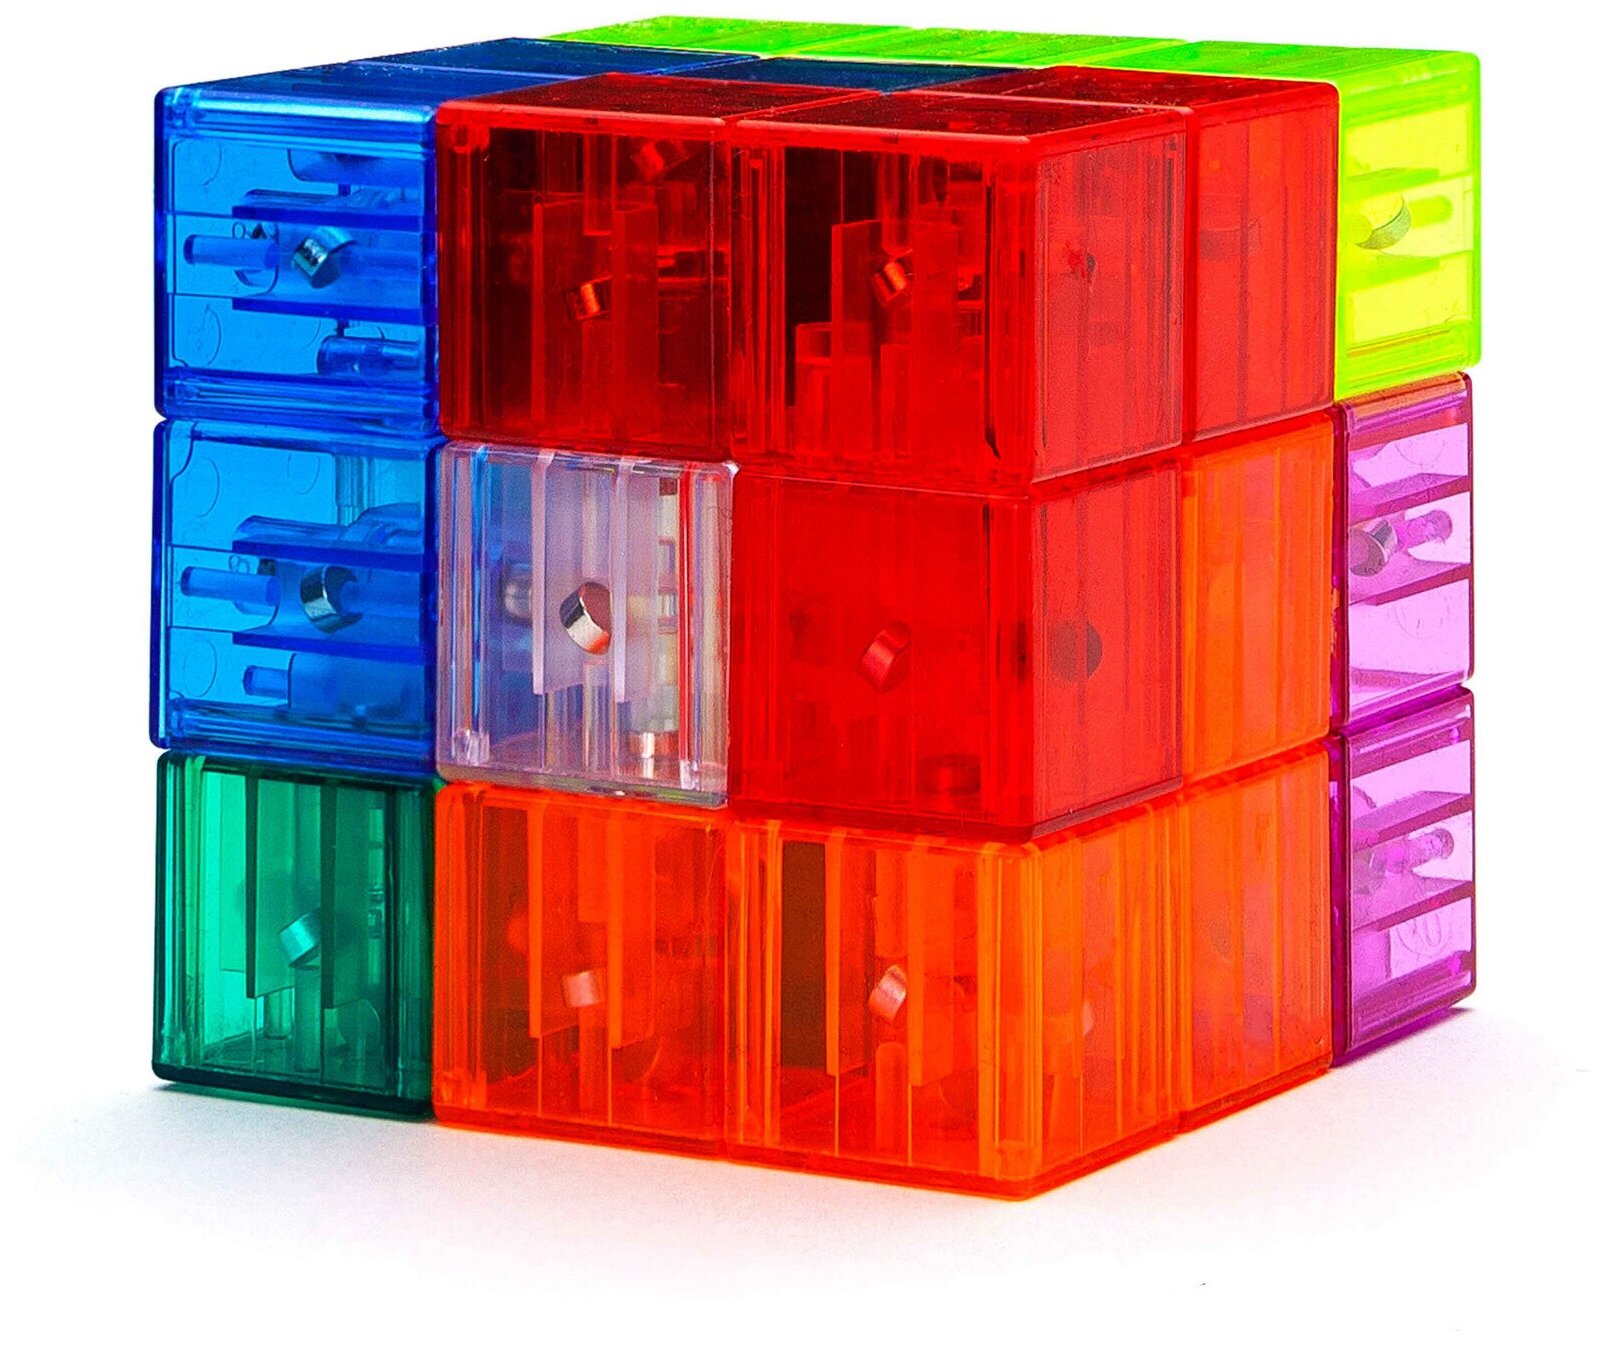 Развивающая игра кубик сома 3D тетрис магнитный YJ Magnet Blocks Cube, transparent